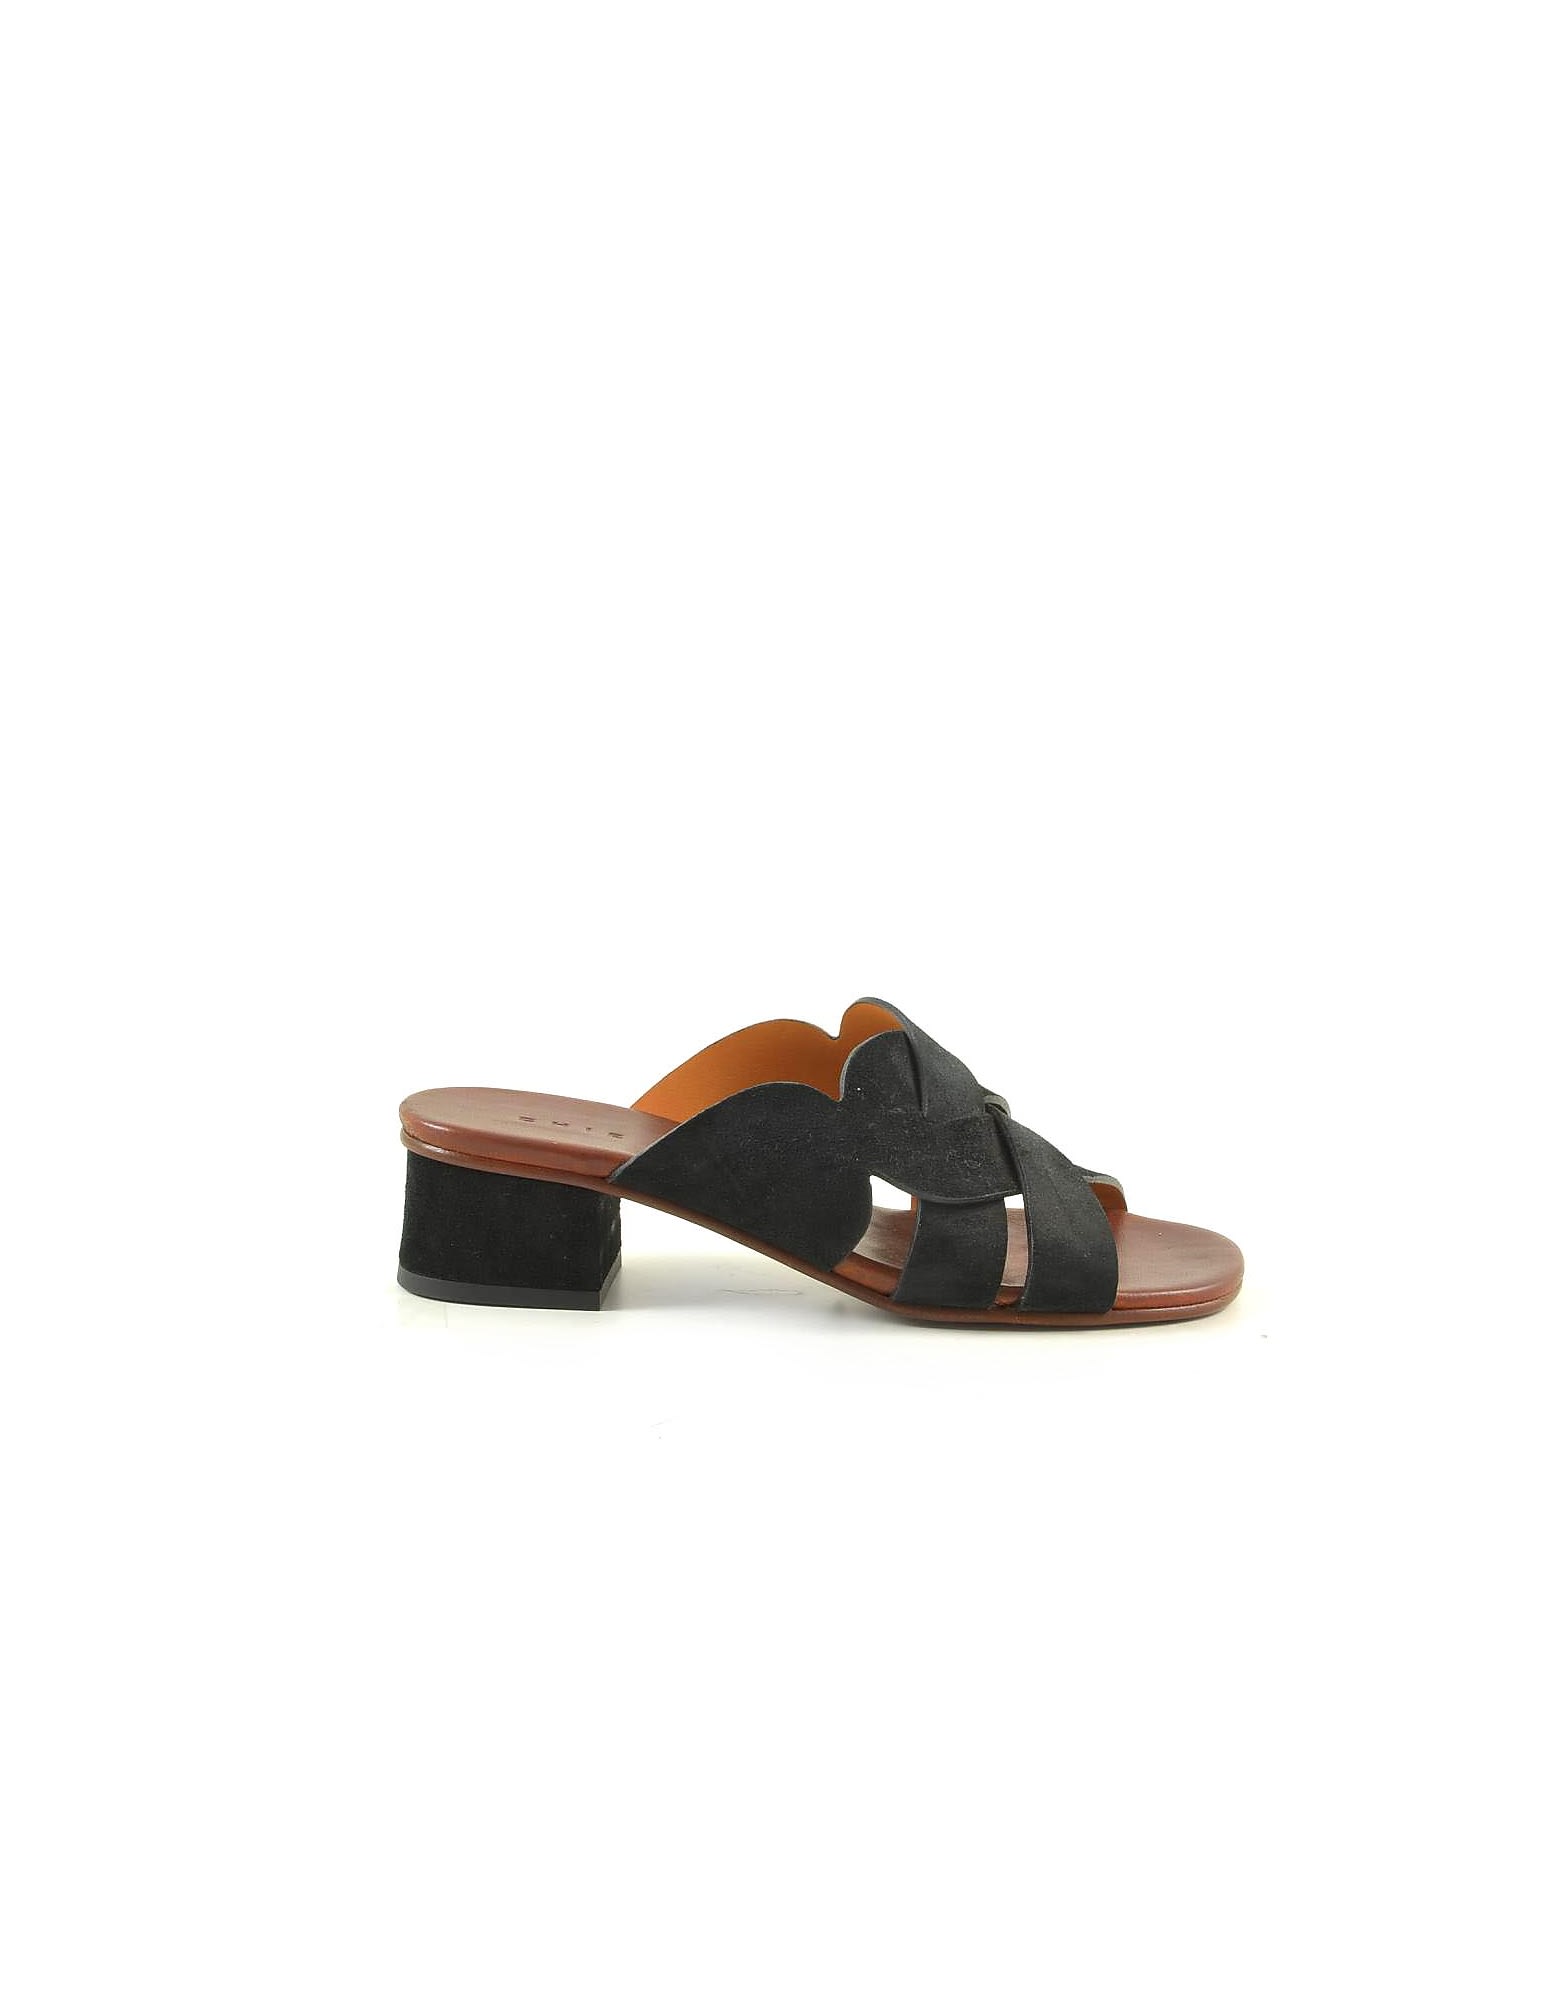 Chie Mihara Black Suede Mid-heel Slide Sandals